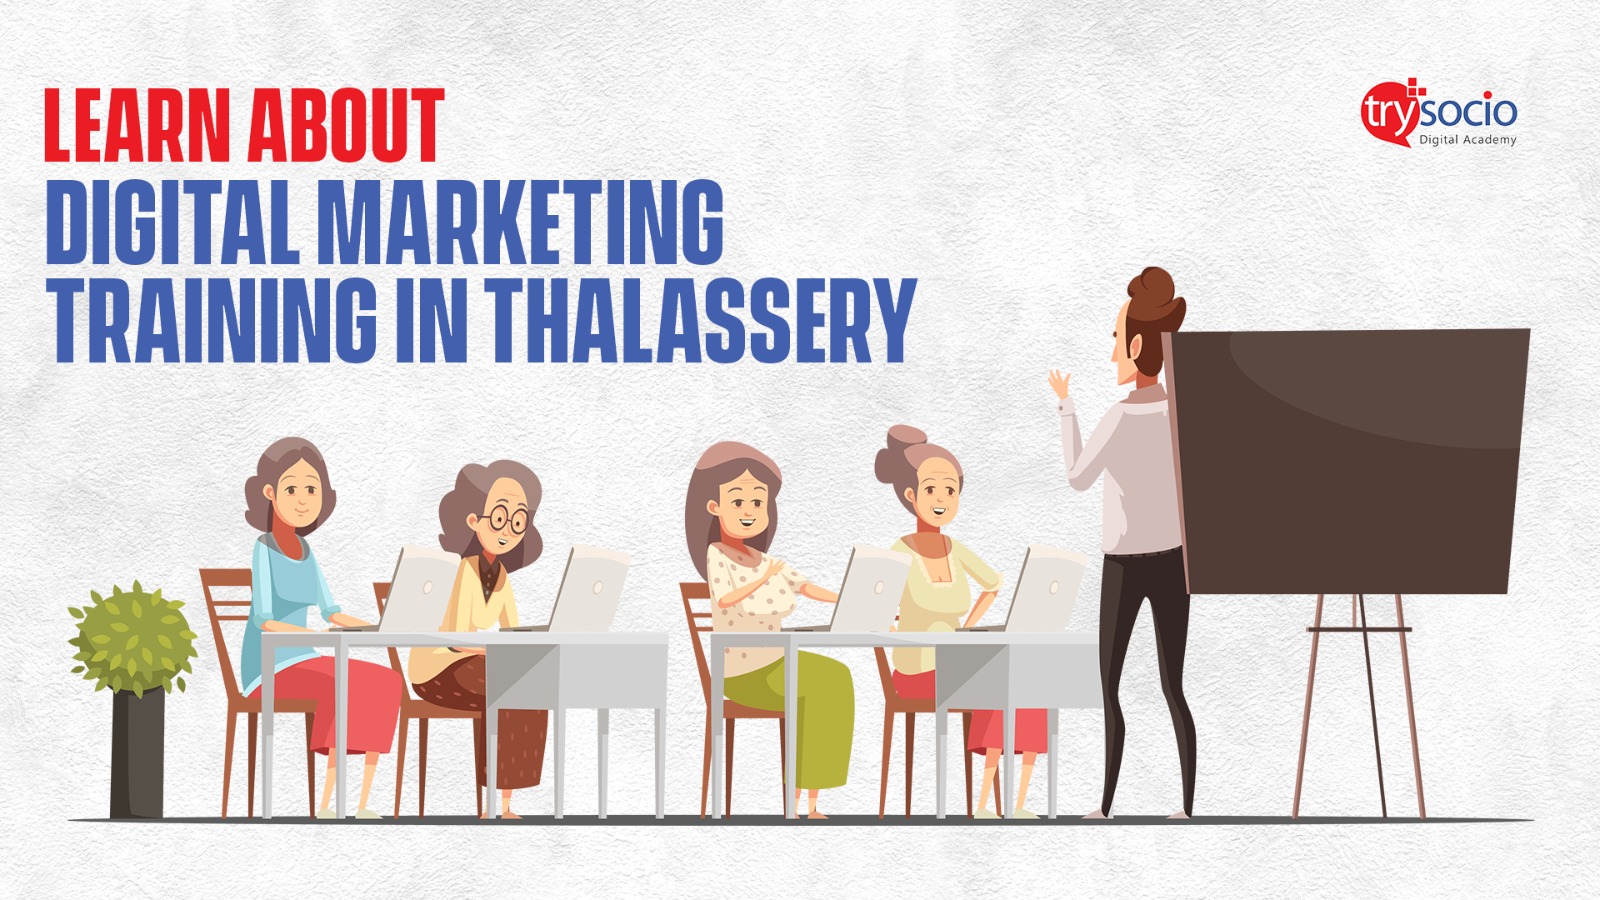 Digital marketing training in thalassery by trysocio academy